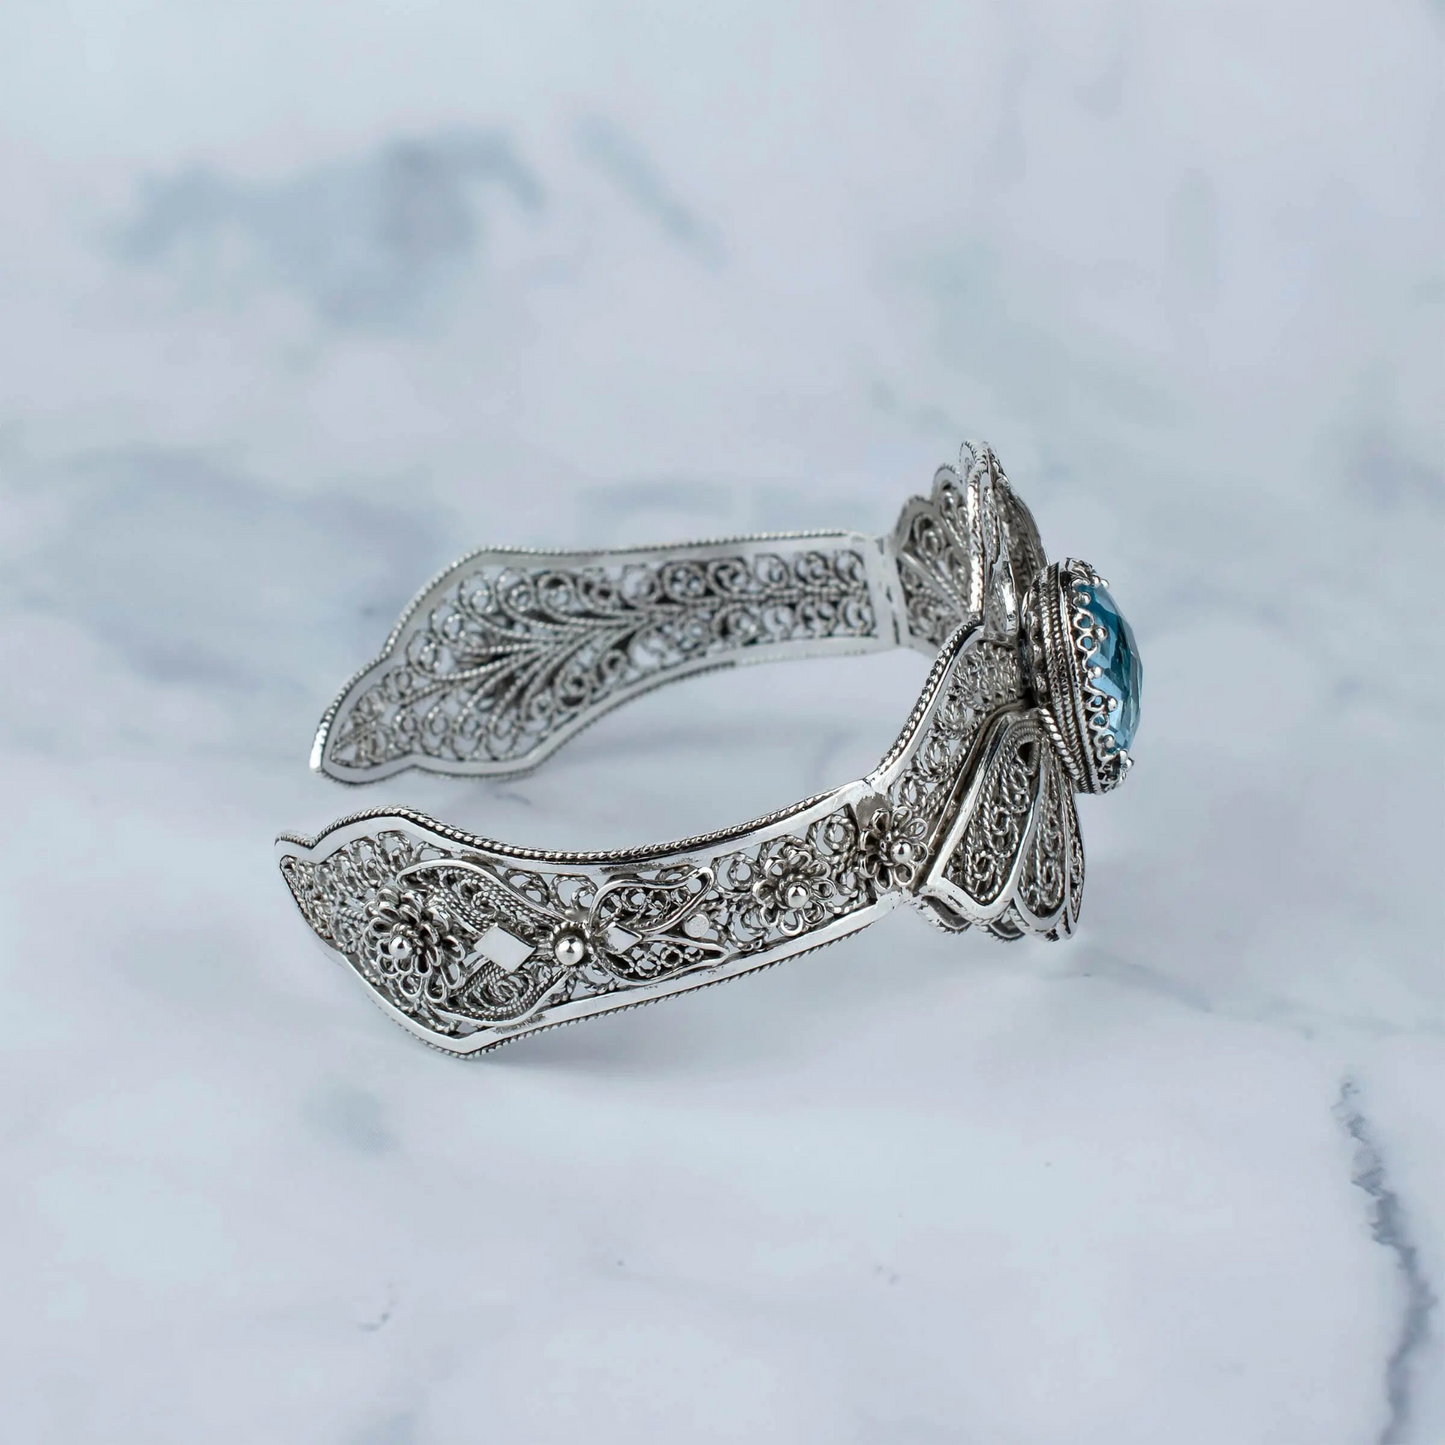 Filigree Art Blue Topaz Gemstone Double Swan Figured Women Silver Cuff Bracelet